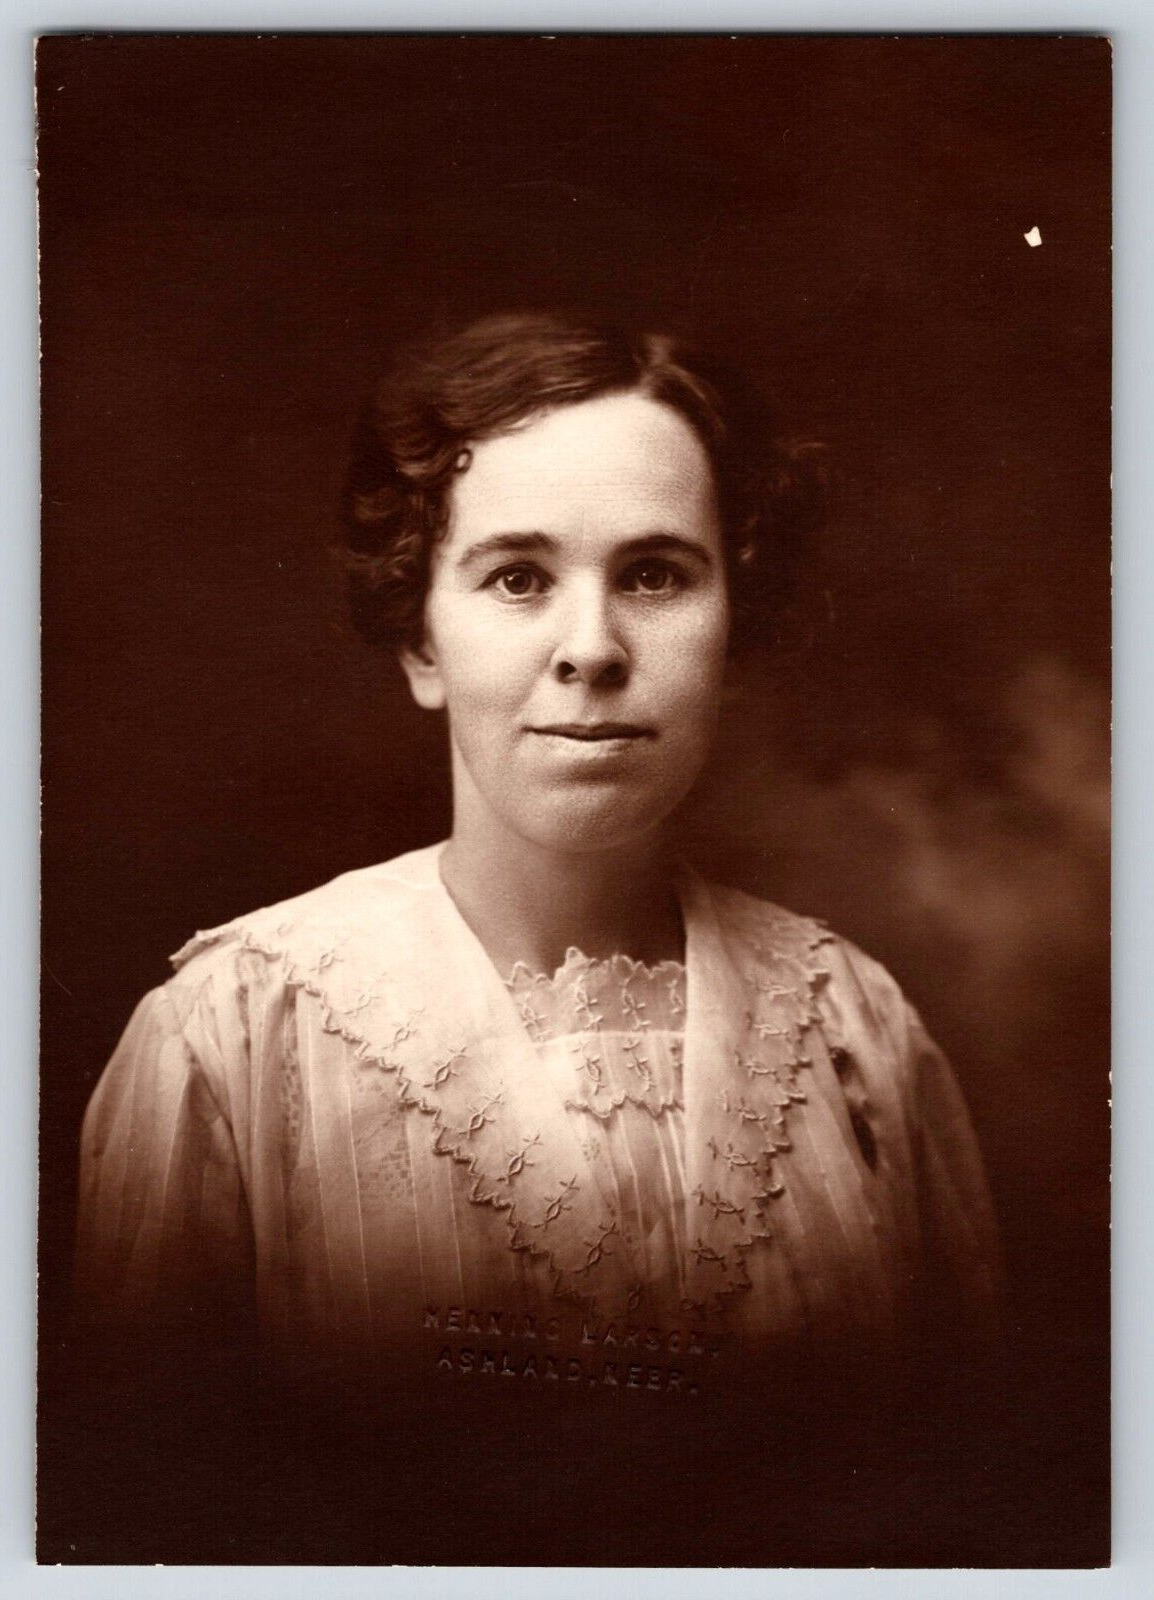 PORTRAIT OF A WOMAN IN A WHITE LACE DRESS, ANTIQUE VINTAGE PHOTOGRAPH, OOAK